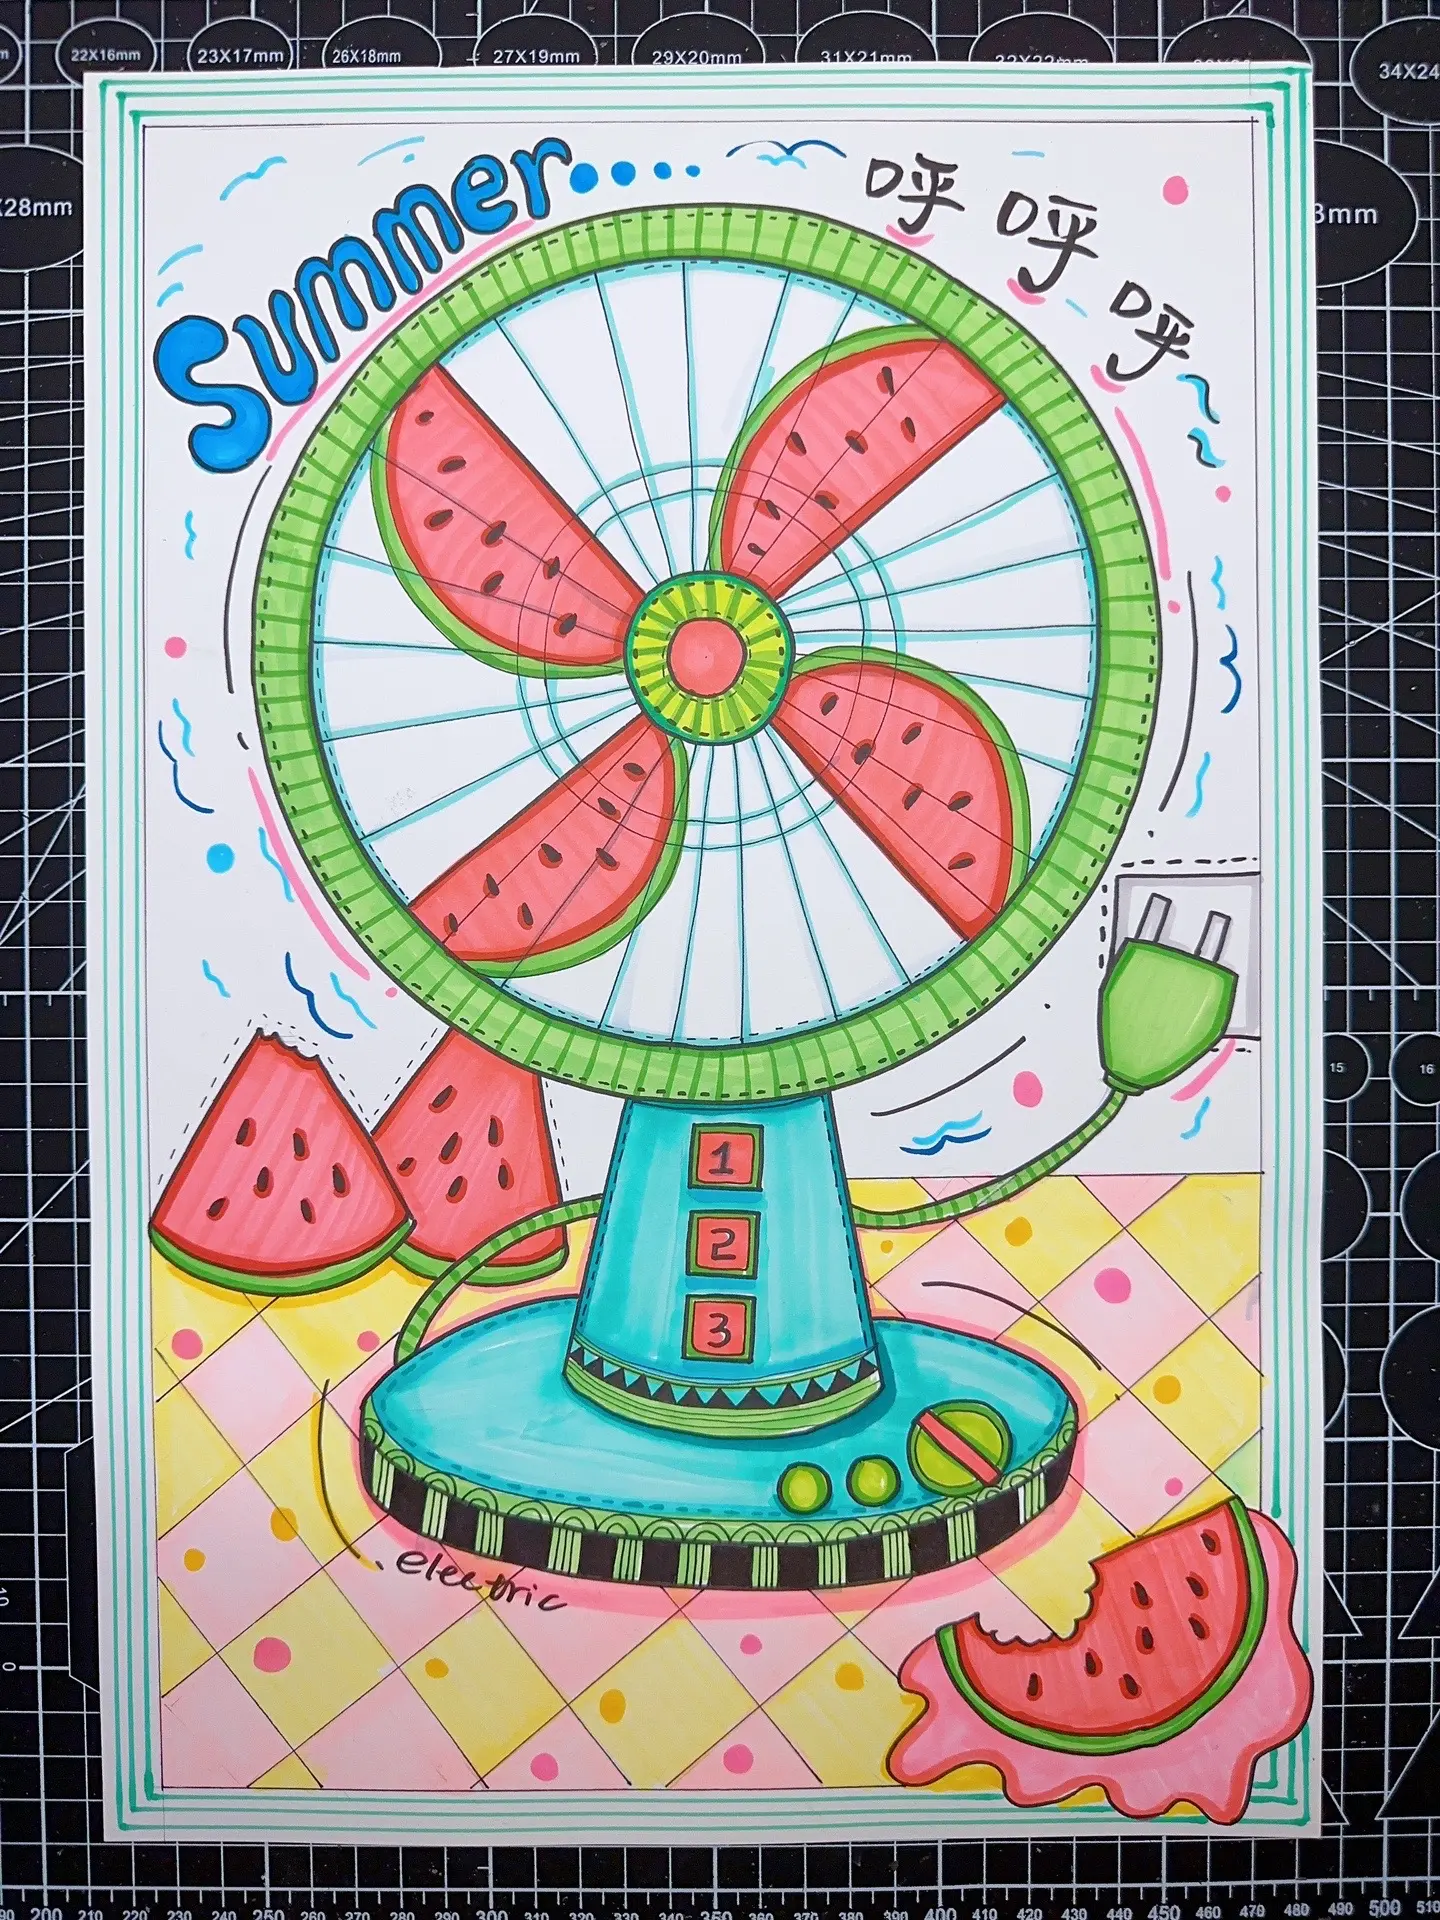 夏天甜甜的冰淇淋/儿童画/简笔画 - 堆糖，美图壁纸兴趣社区